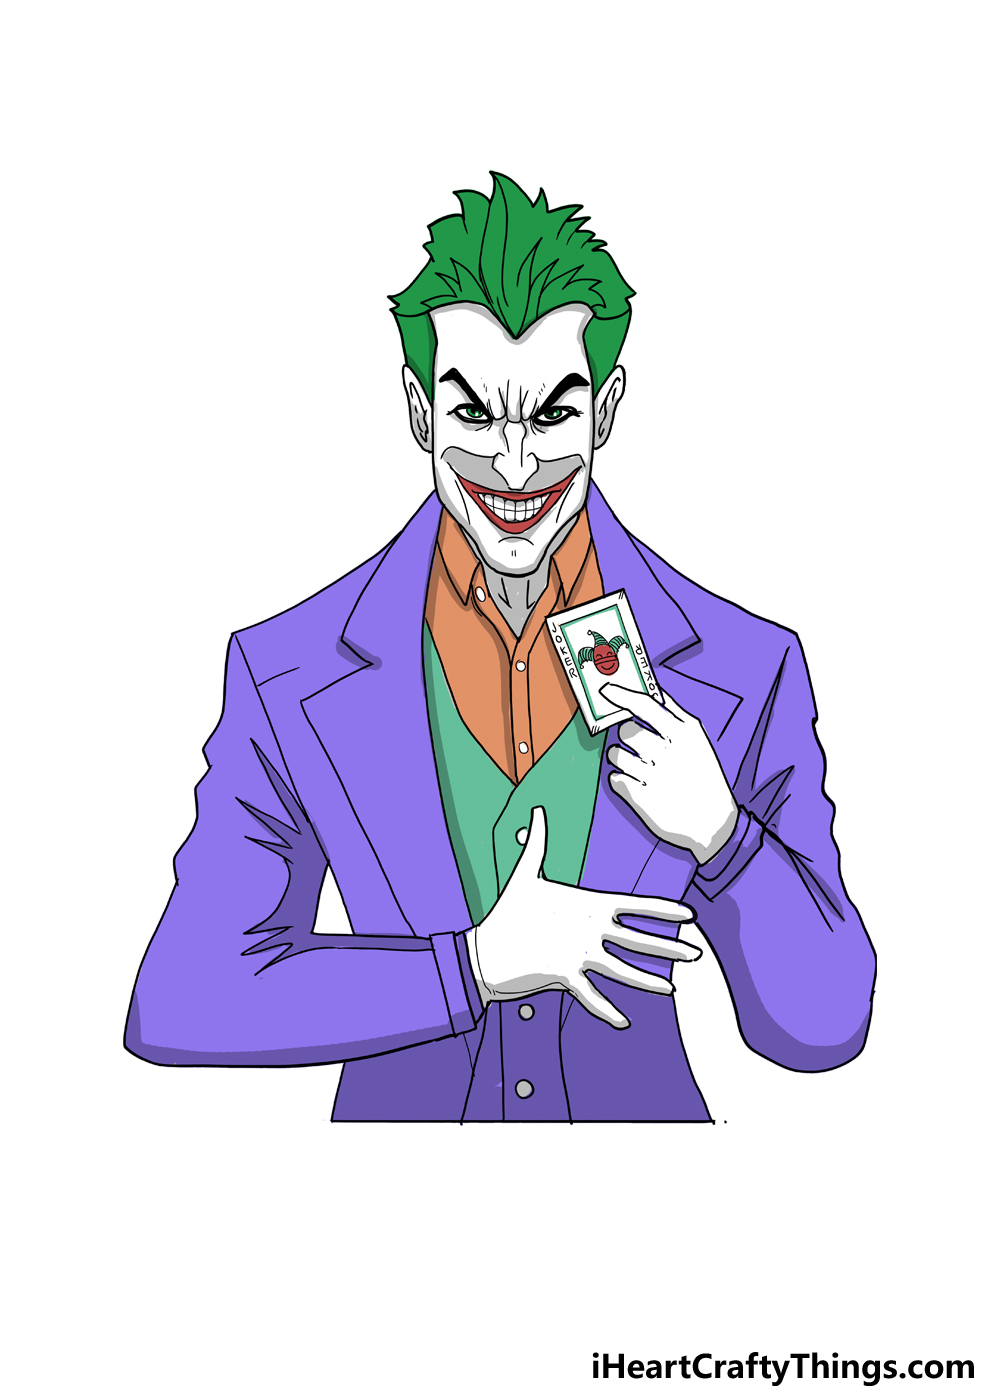 Cách vẽ hình chân dung Joker bằng bút chì màu đơn giản How to draw joker   YouTube